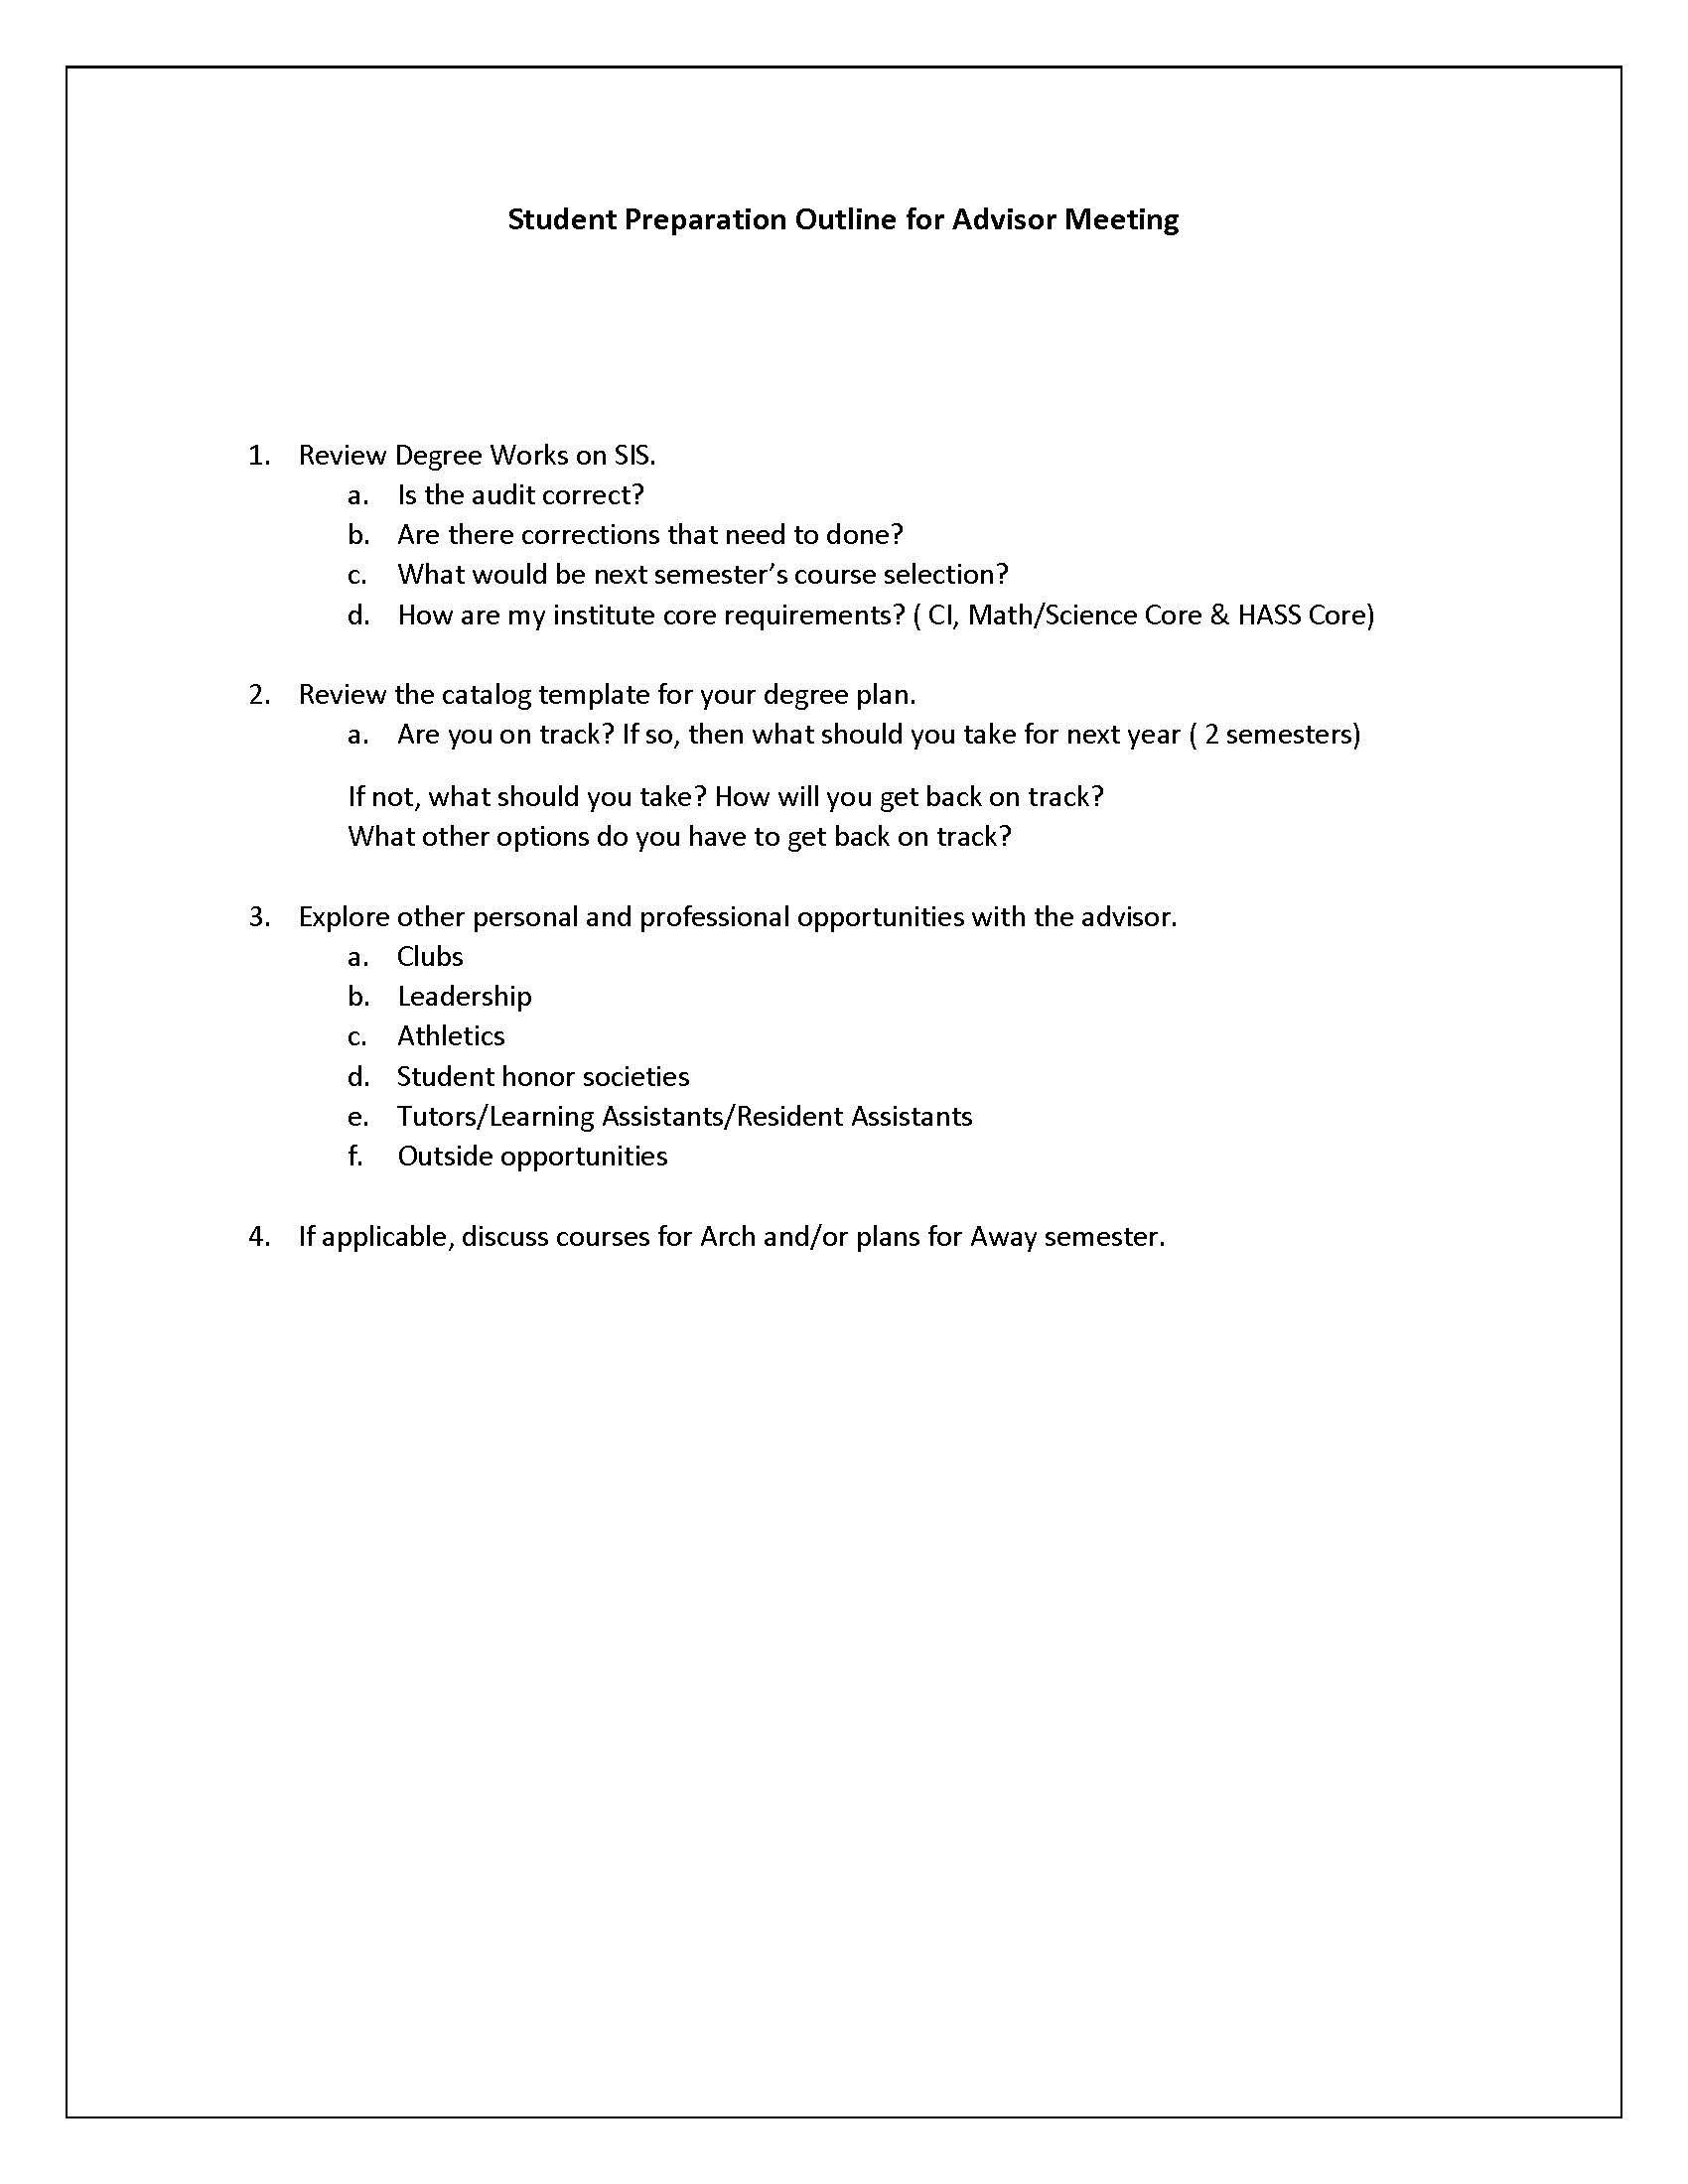 Student Preparation Outline for Advisor Meeting